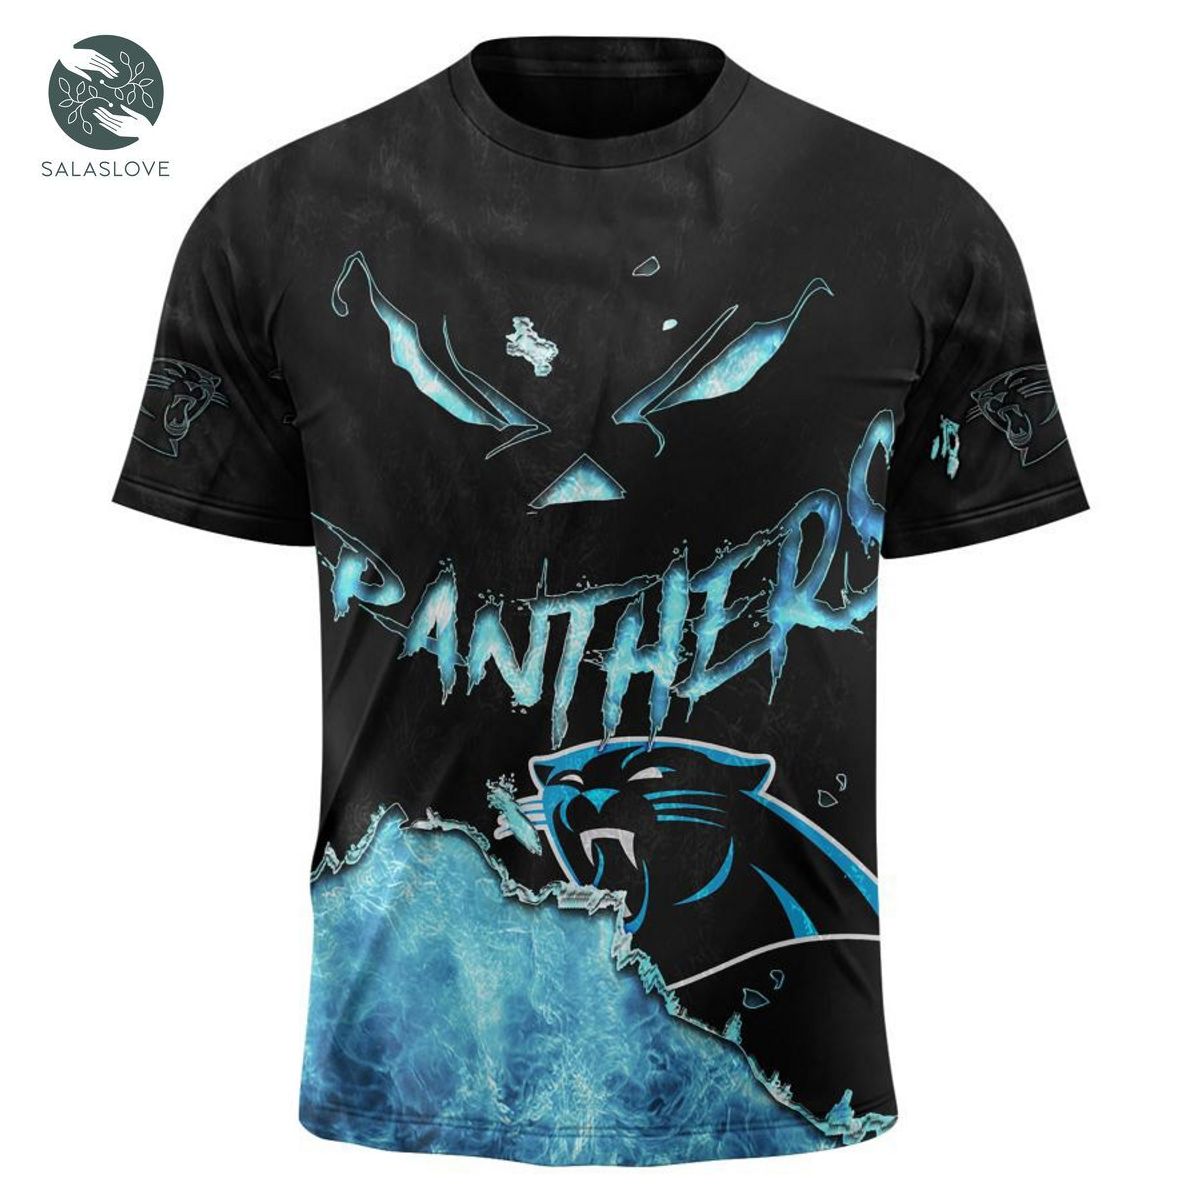 Carolina Panthers T-shirt 3D devil eyes gift for fans